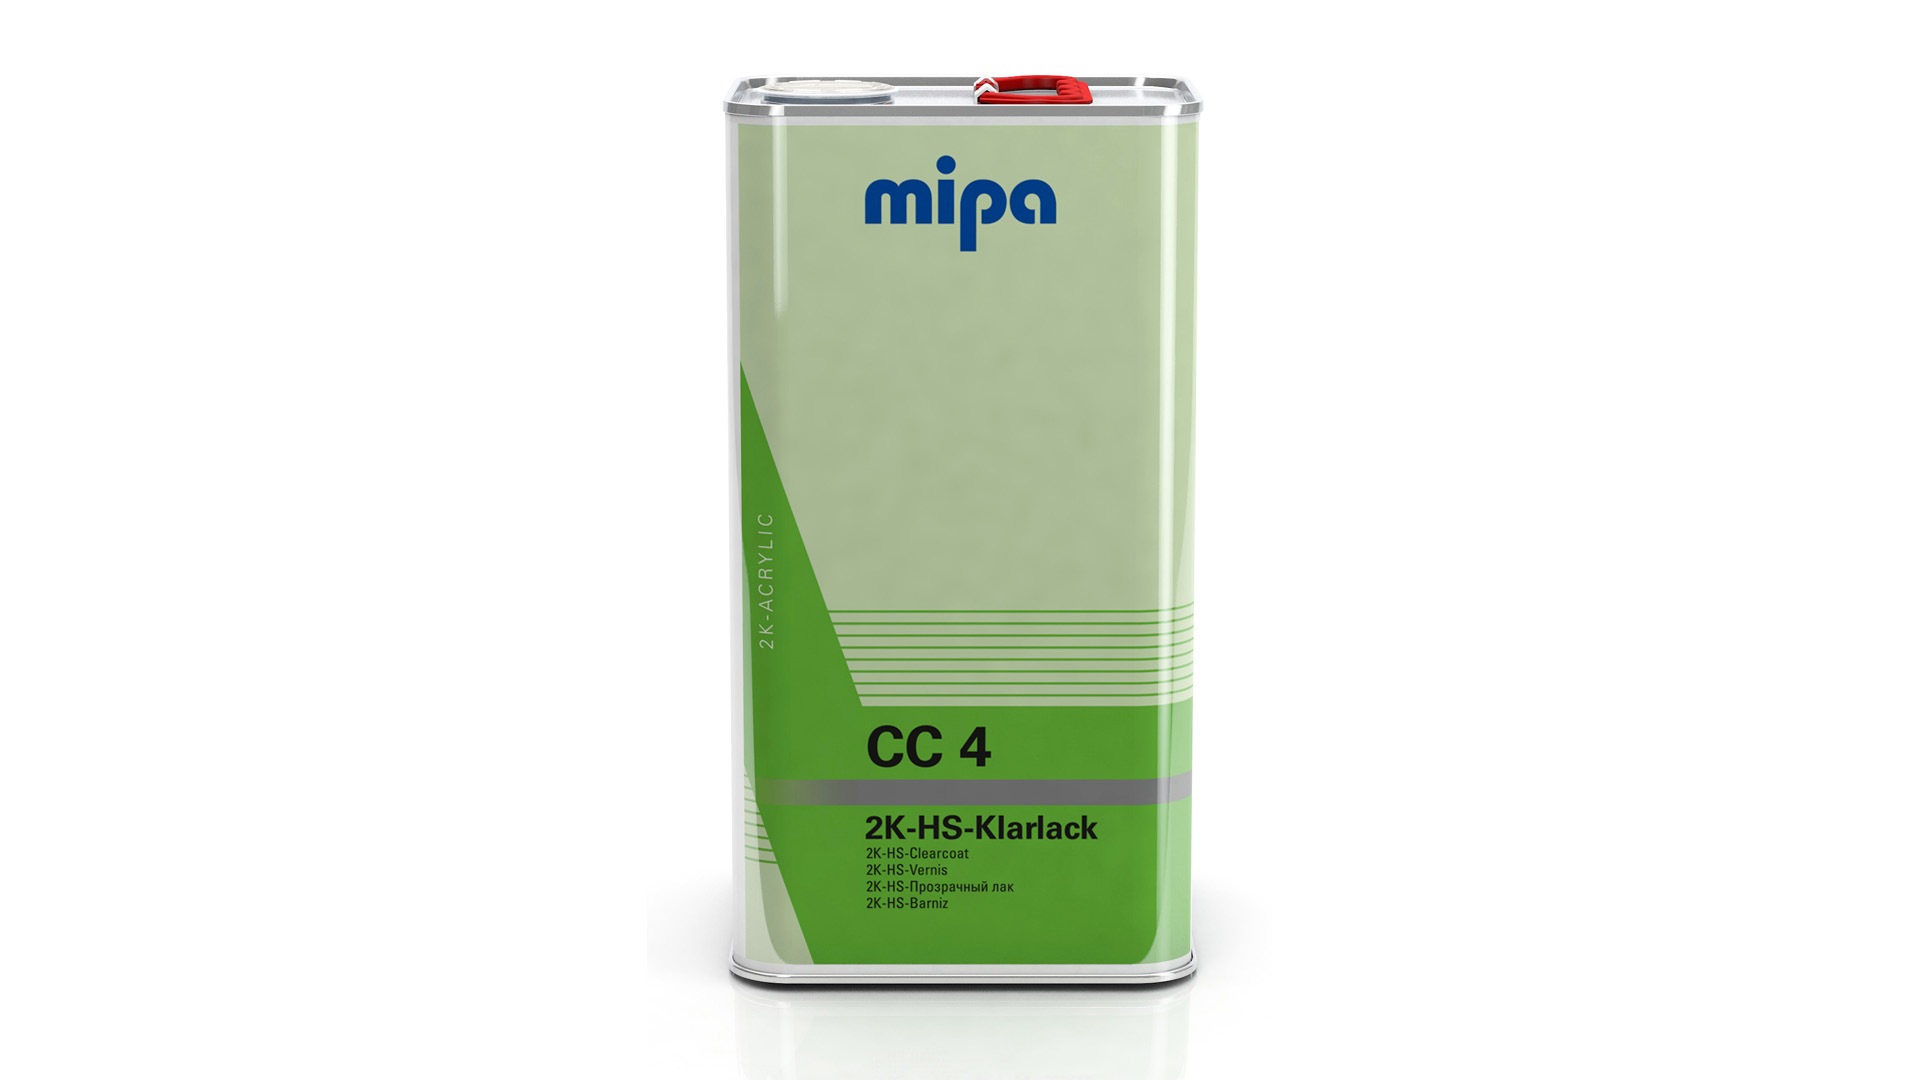 Mipa 2K-HS-Klarlack CC 4 (5l)